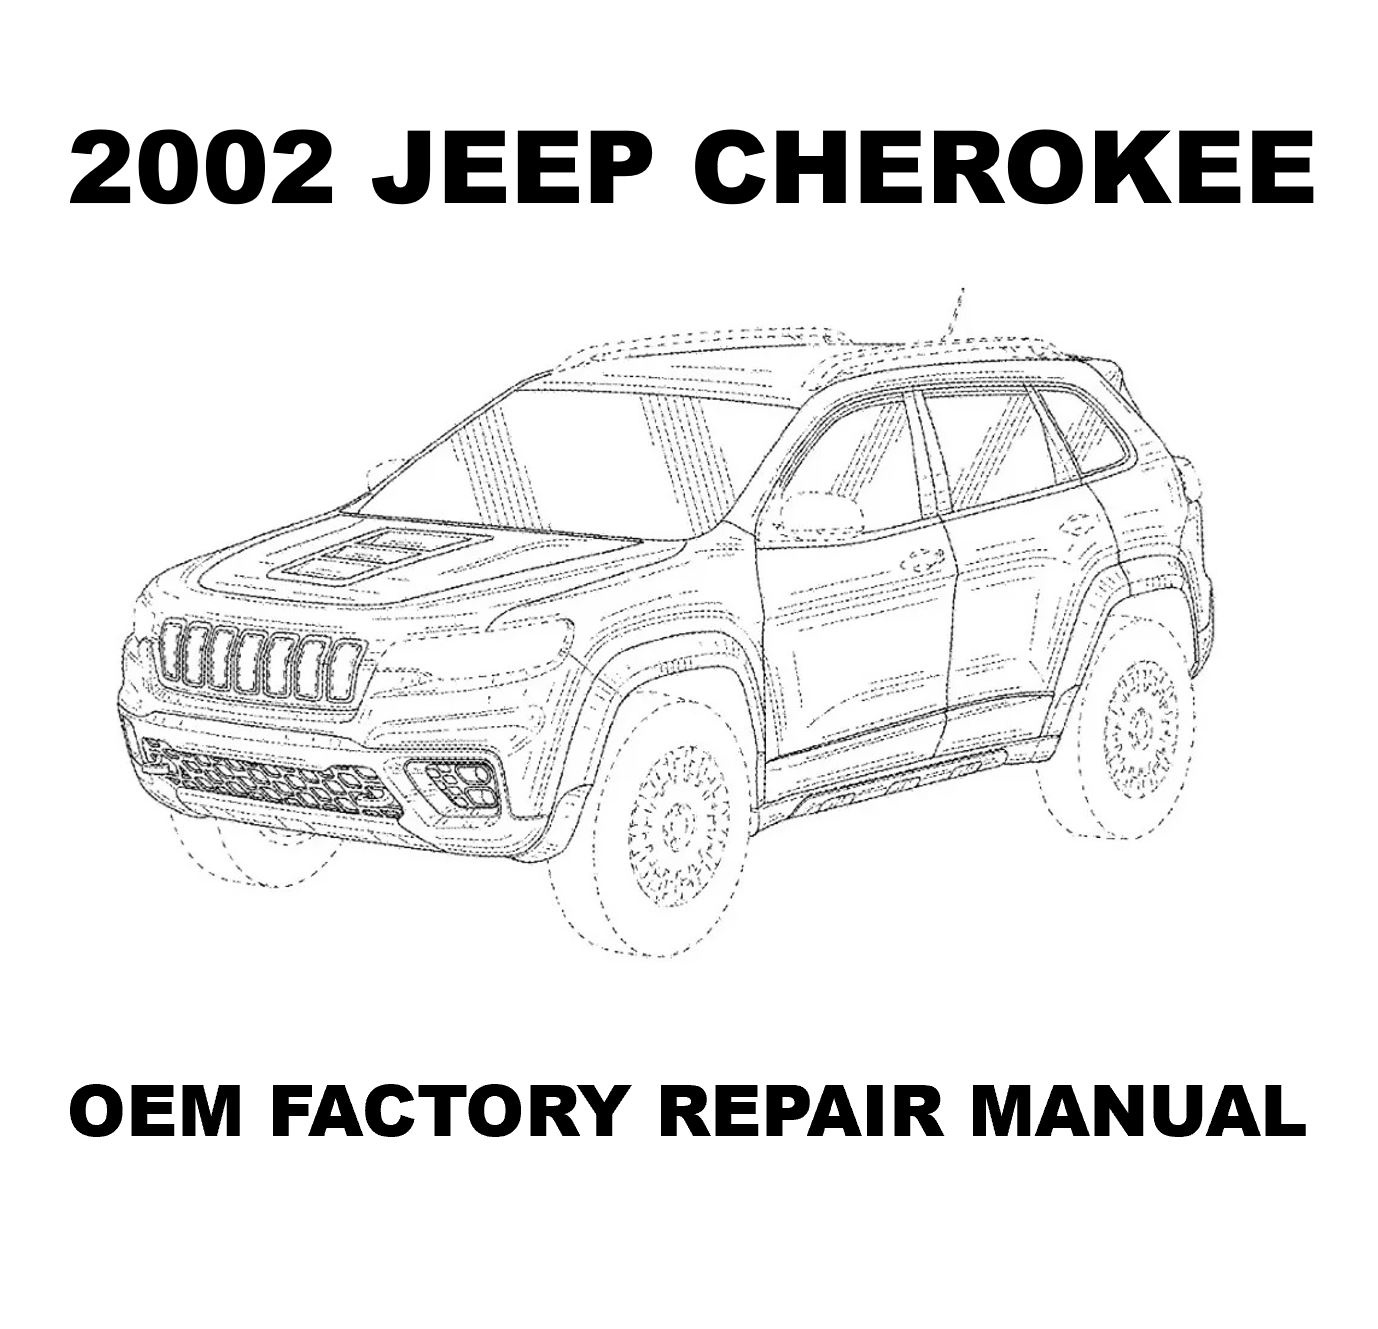 2002_jeep_cherokee_repair_manual_1378